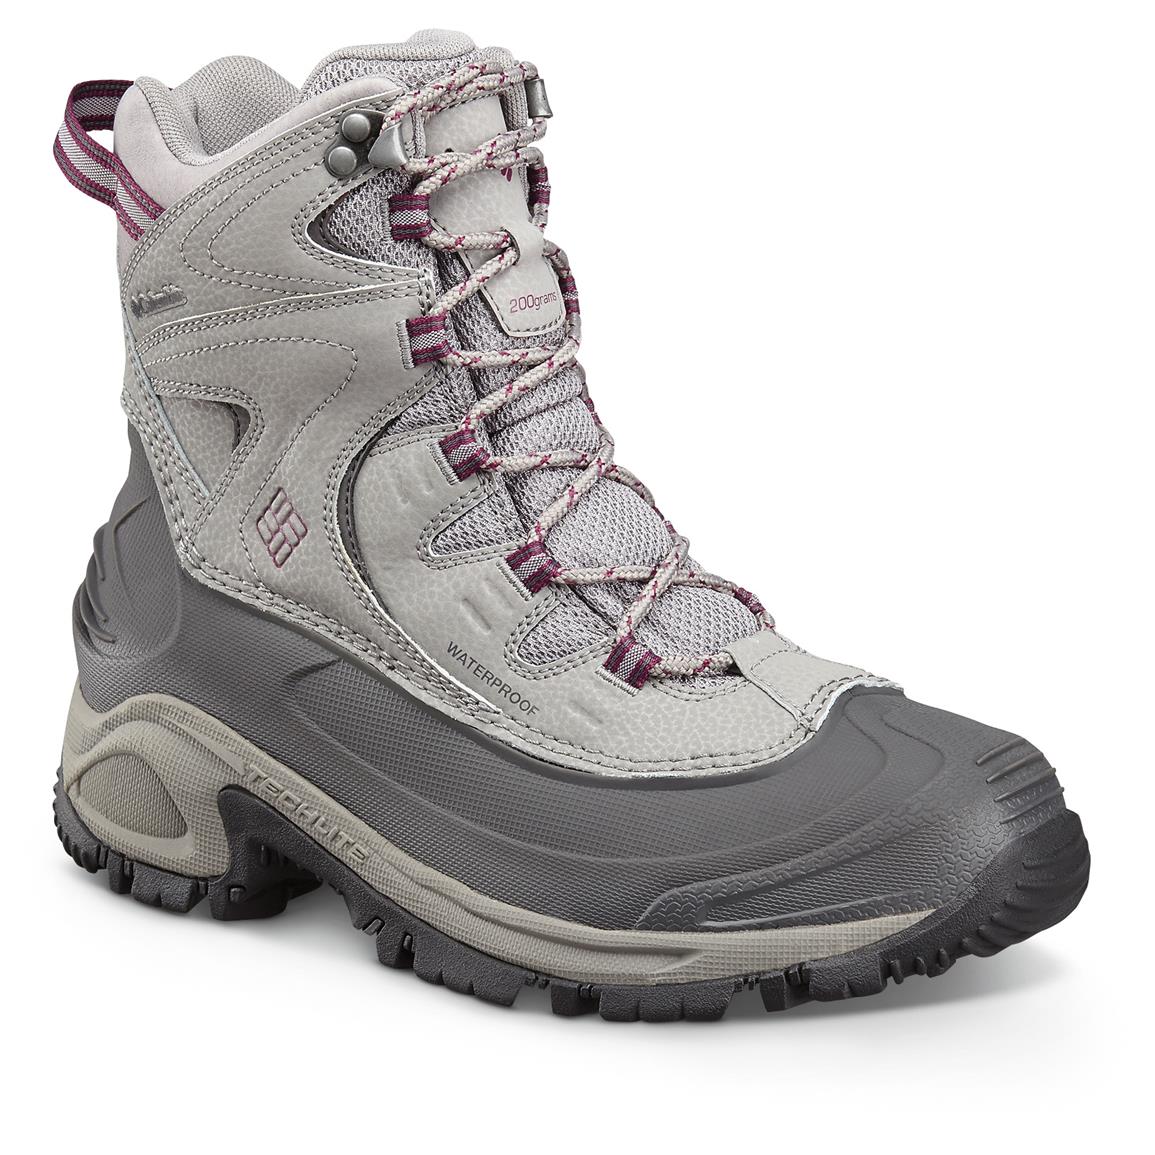 boots columbia waterproof